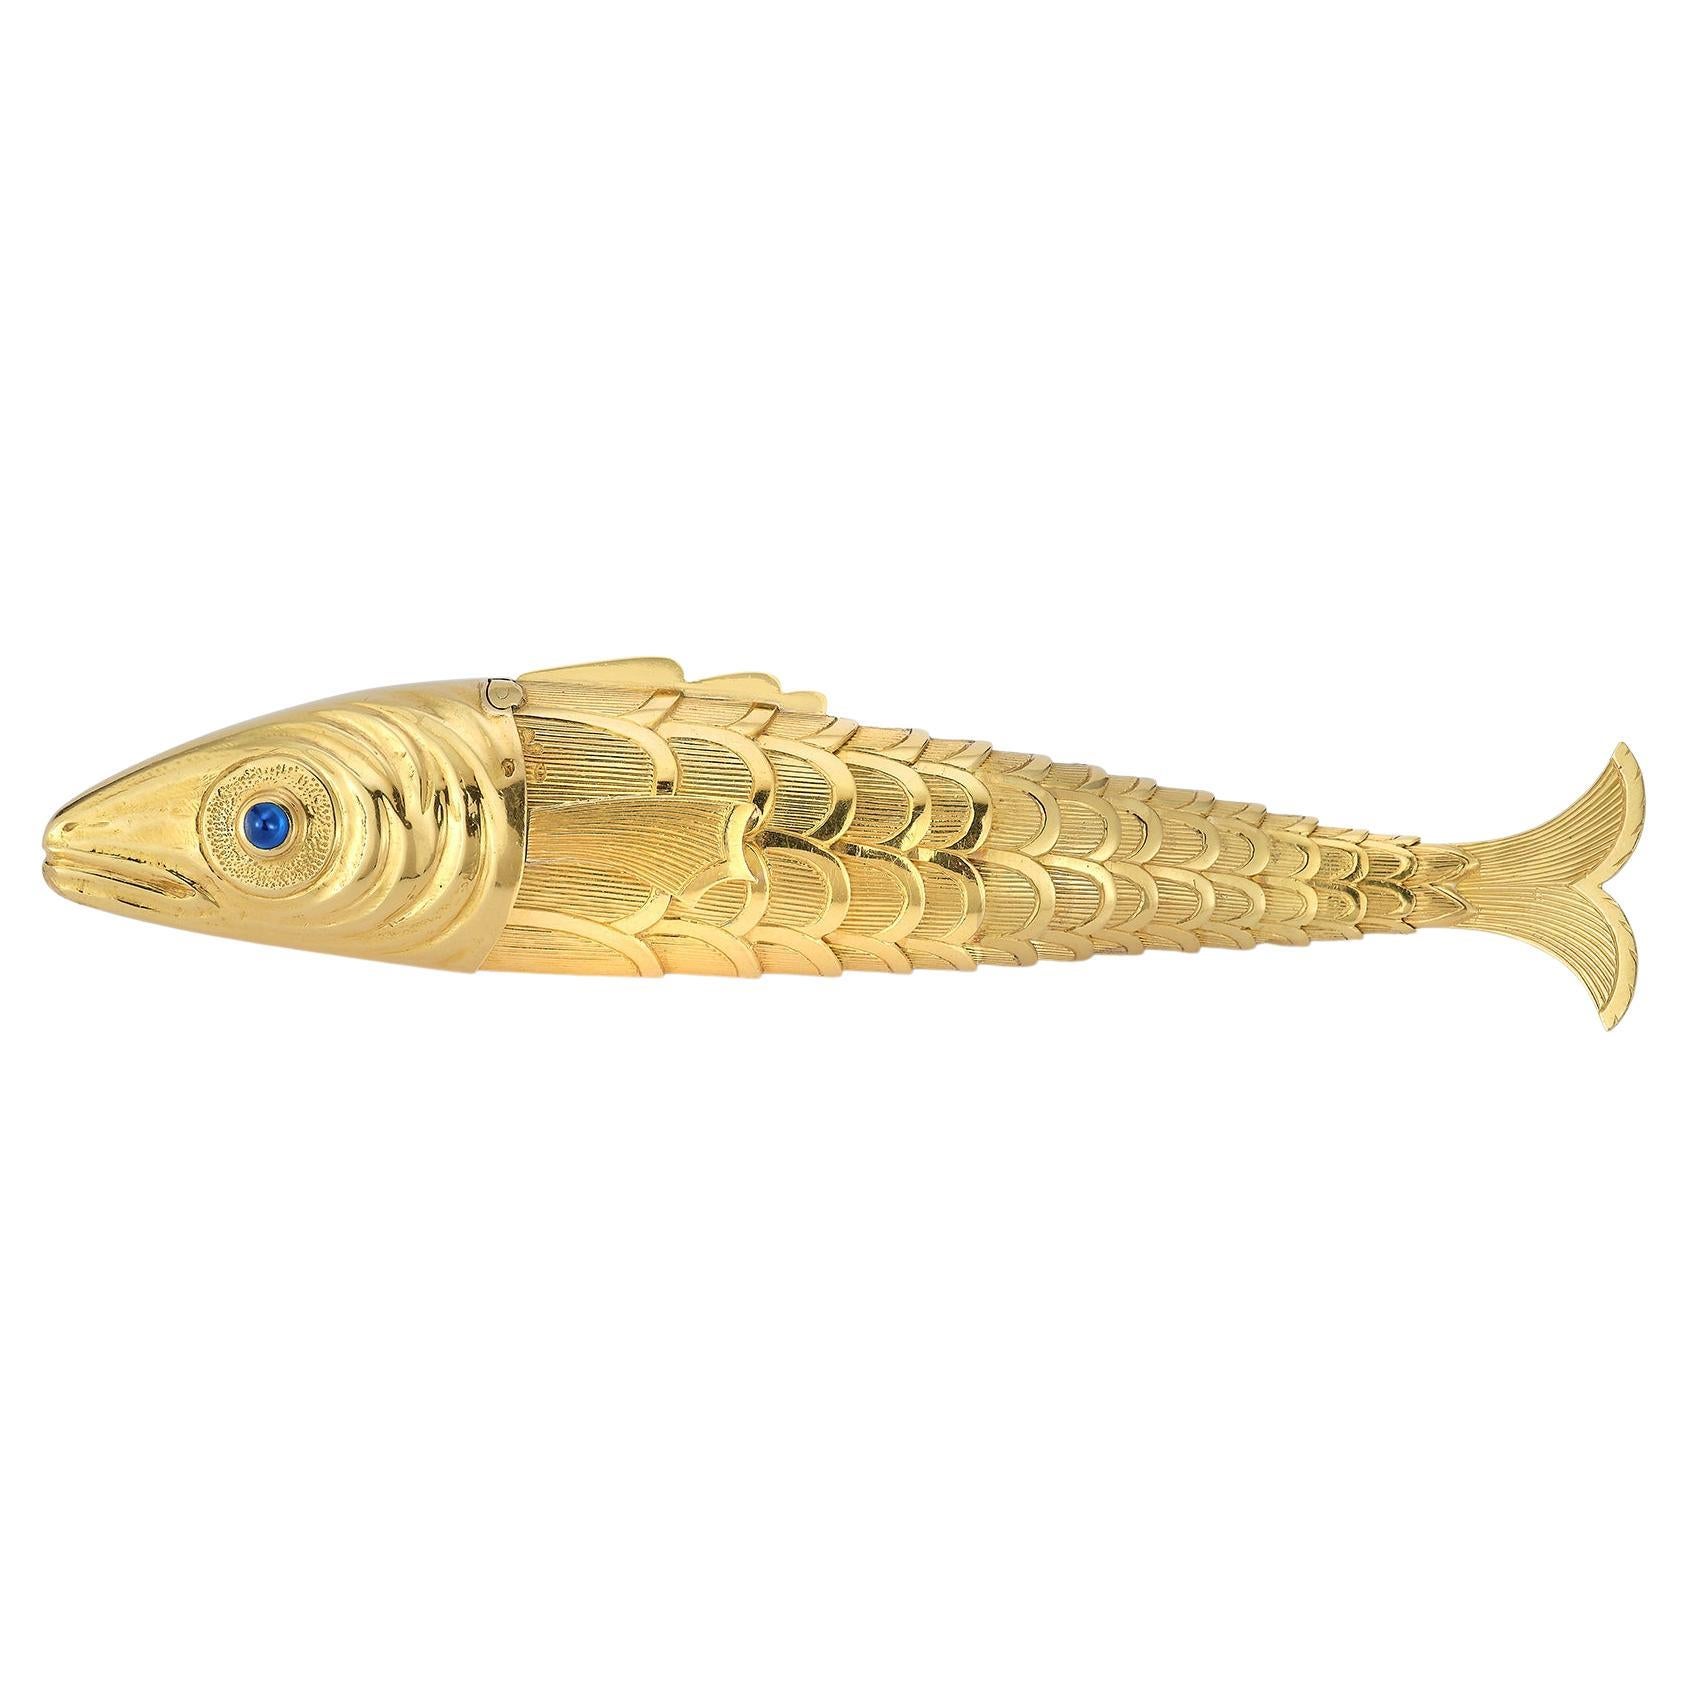 Schlumberger Gold Fish Briquet
Fabriqué vers 1939.  
Un poisson rouge flexible aux écailles d'or texturées serties d'un saphir cabochon et d'un rubis en guise d'yeux,
Or jaune 18k. 
La tête qui s'ouvre pour révéler un mécanisme de briquet.

Mesures